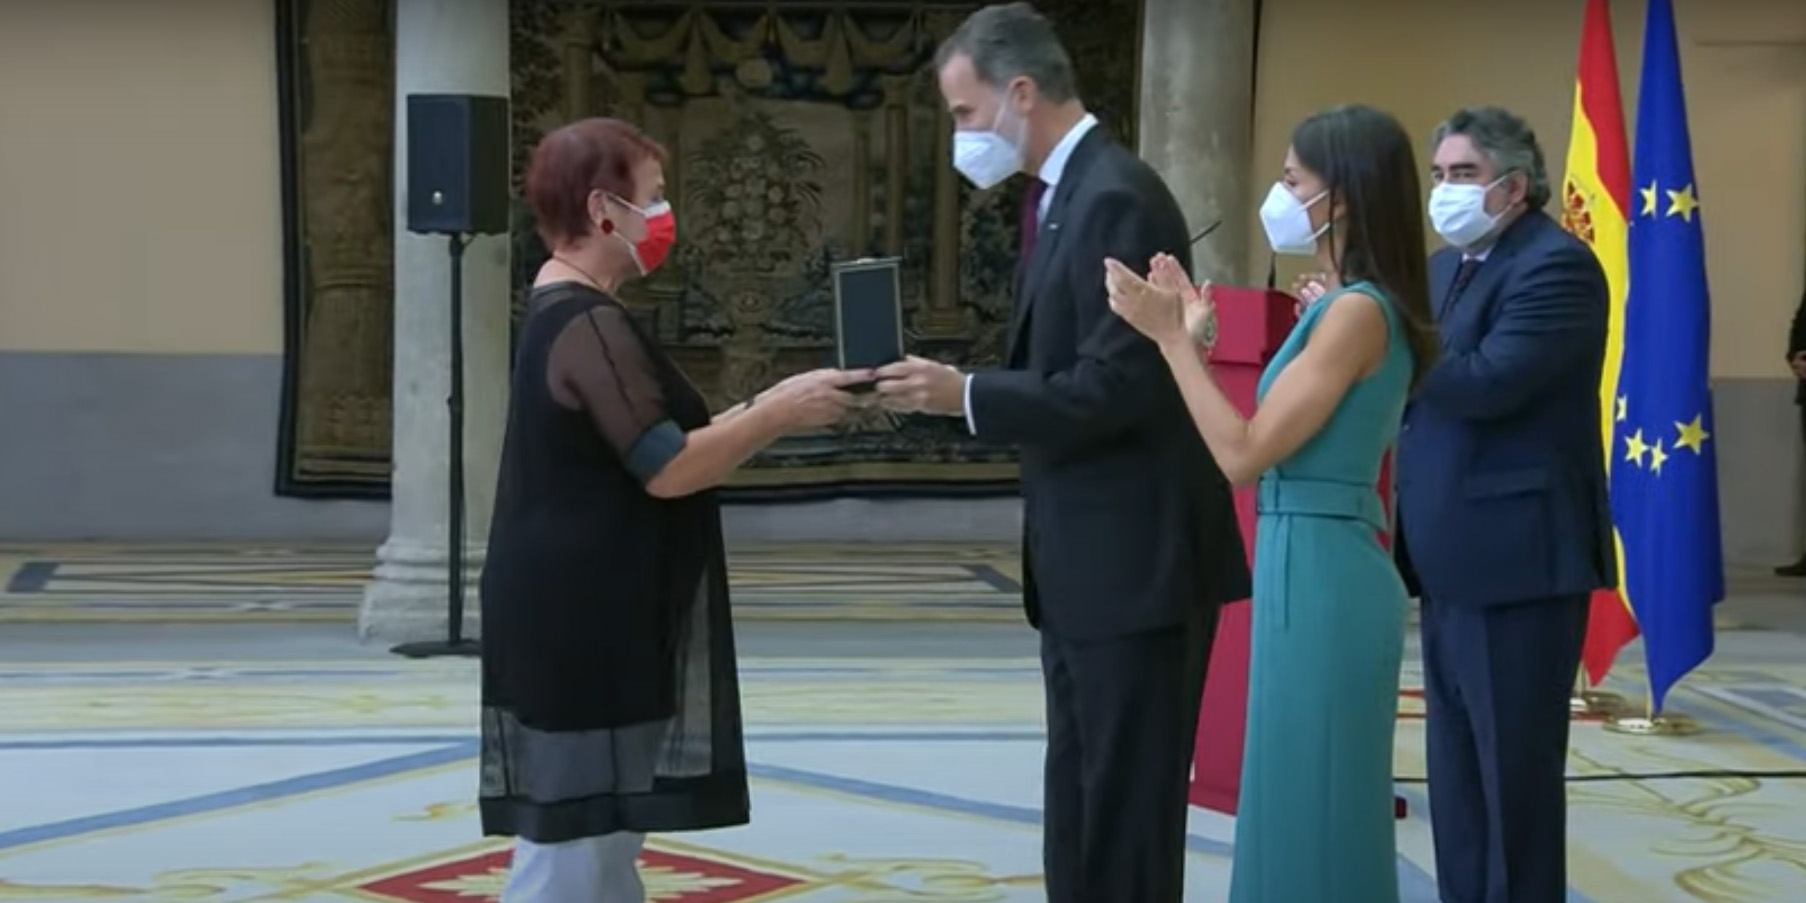 La Profesora María Ángeles Querol Fernández recibe la Medalla de Oro al Mérito en las Bellas Artes en un acto presidido por SS.MM. los Reyes